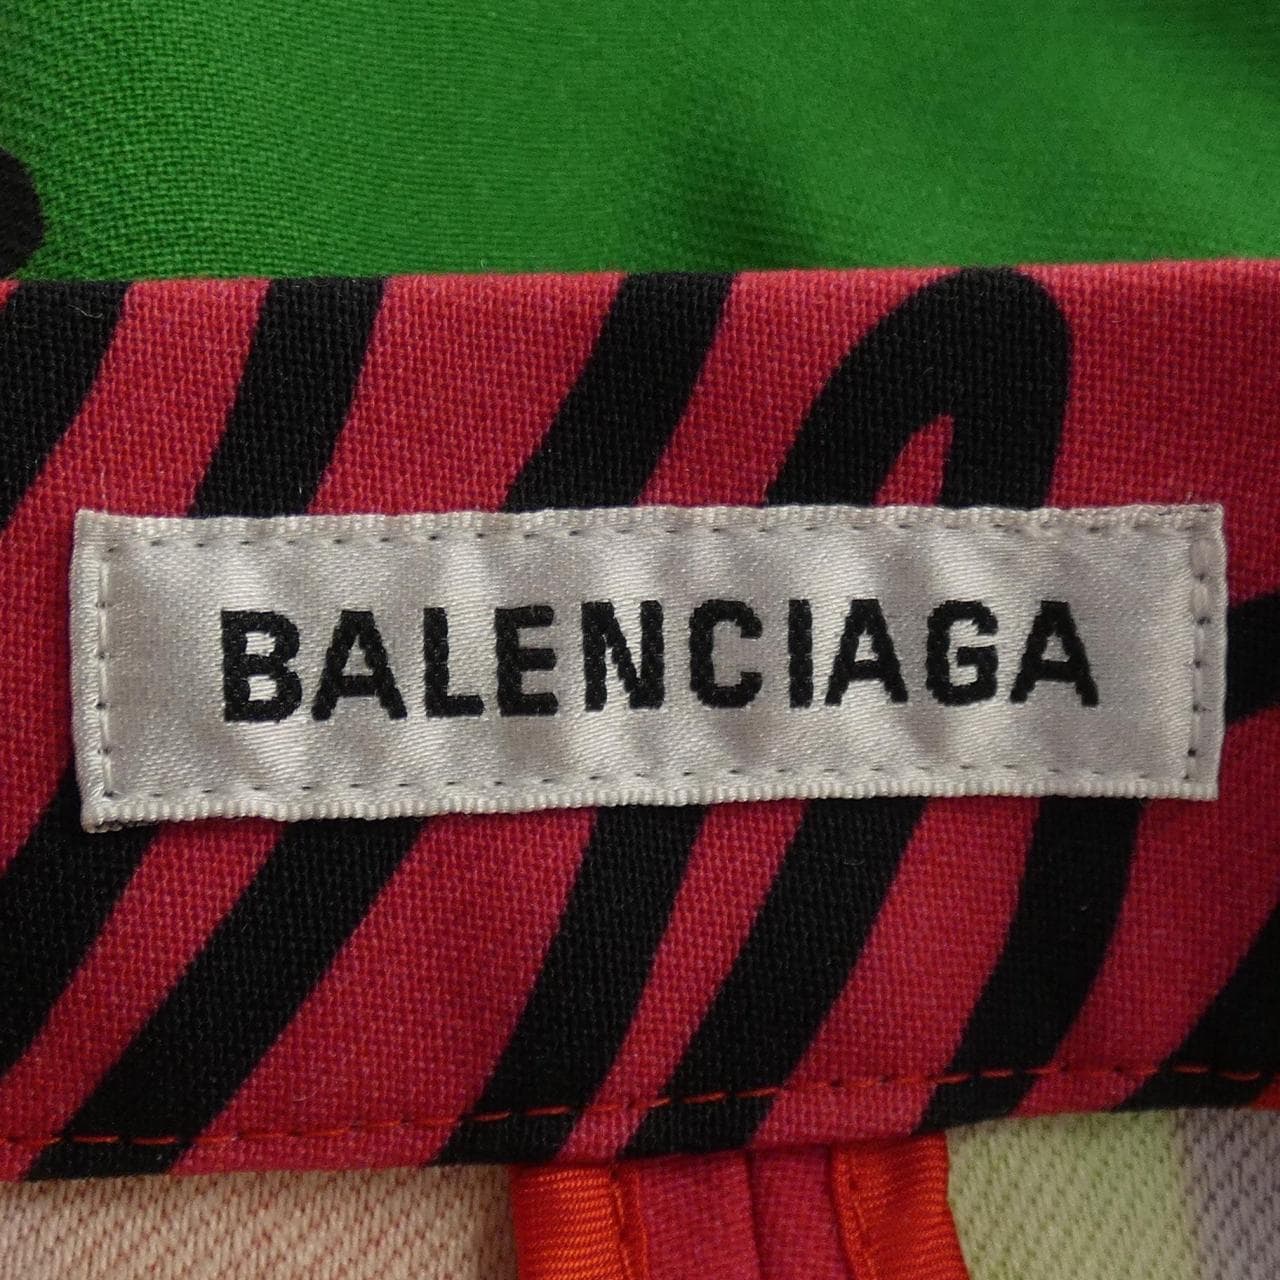 バレンシアガ BALENCIAGA パンツ